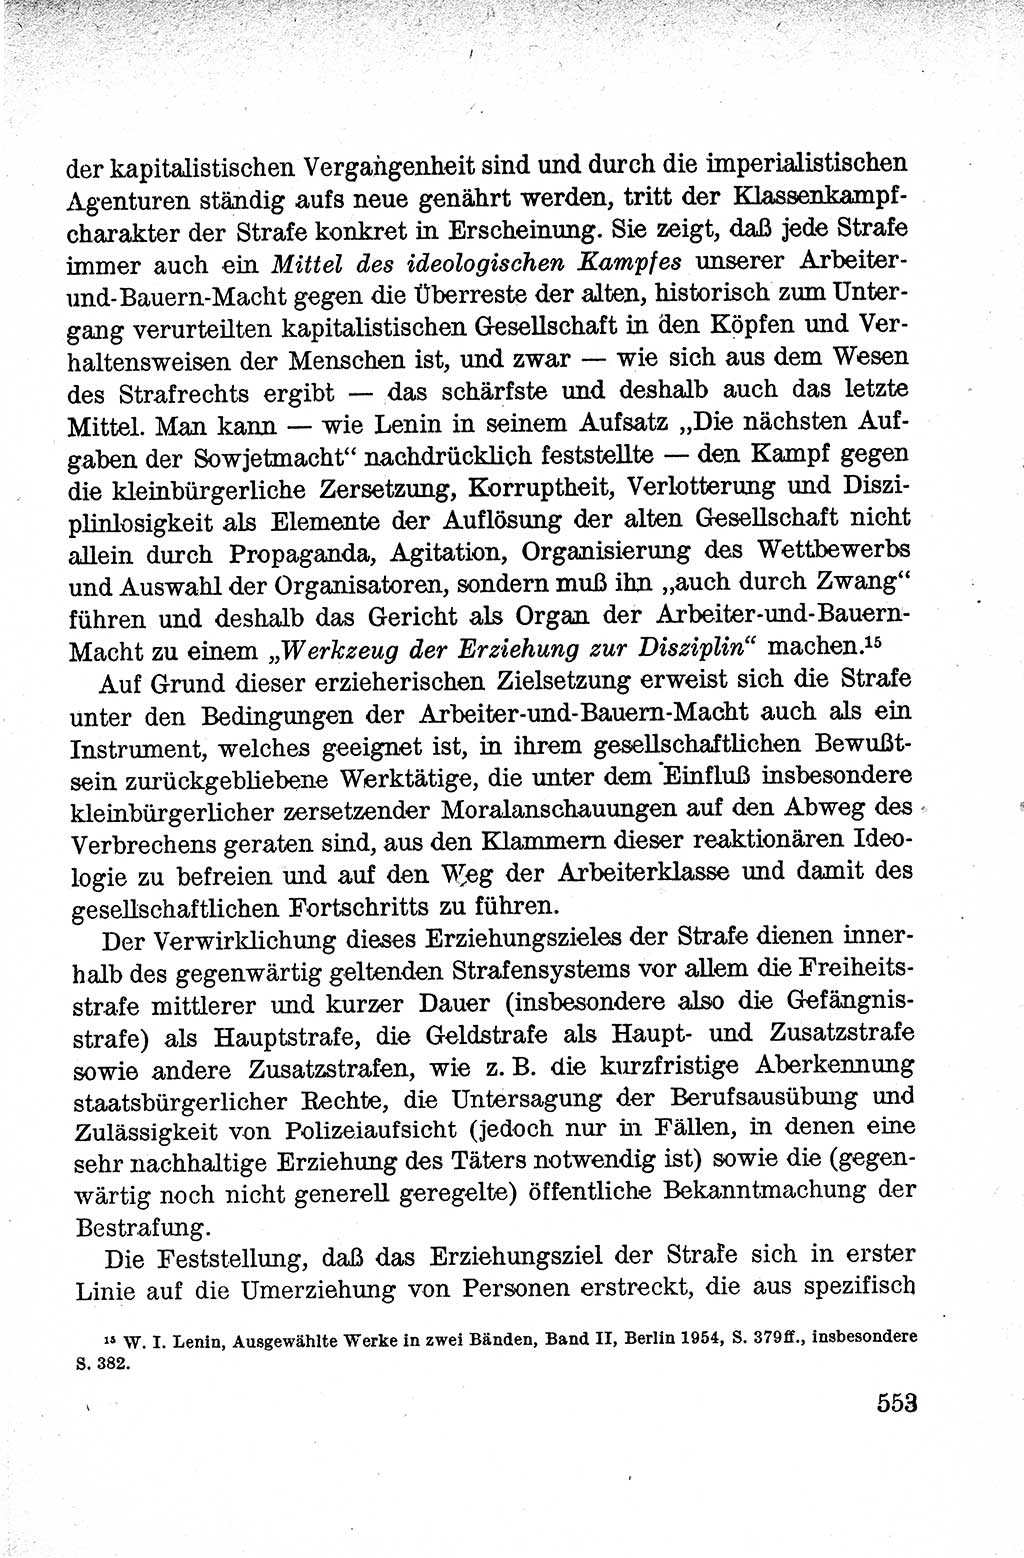 Lehrbuch des Strafrechts der Deutschen Demokratischen Republik (DDR), Allgemeiner Teil 1959, Seite 553 (Lb. Strafr. DDR AT 1959, S. 553)